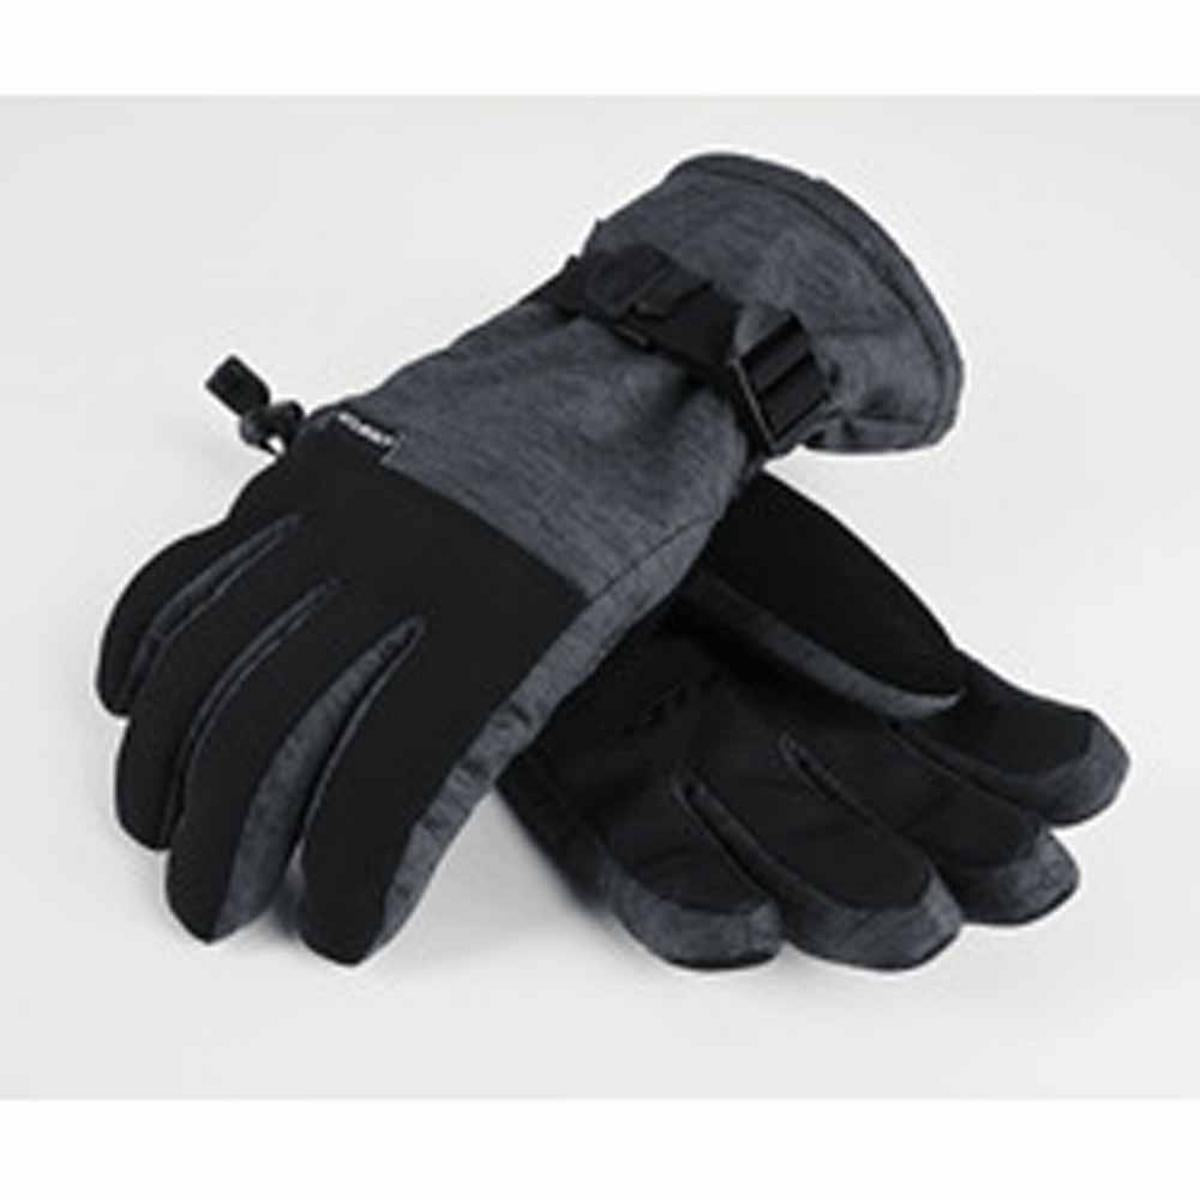 Seirus Men's Heatwave Crest Gloves